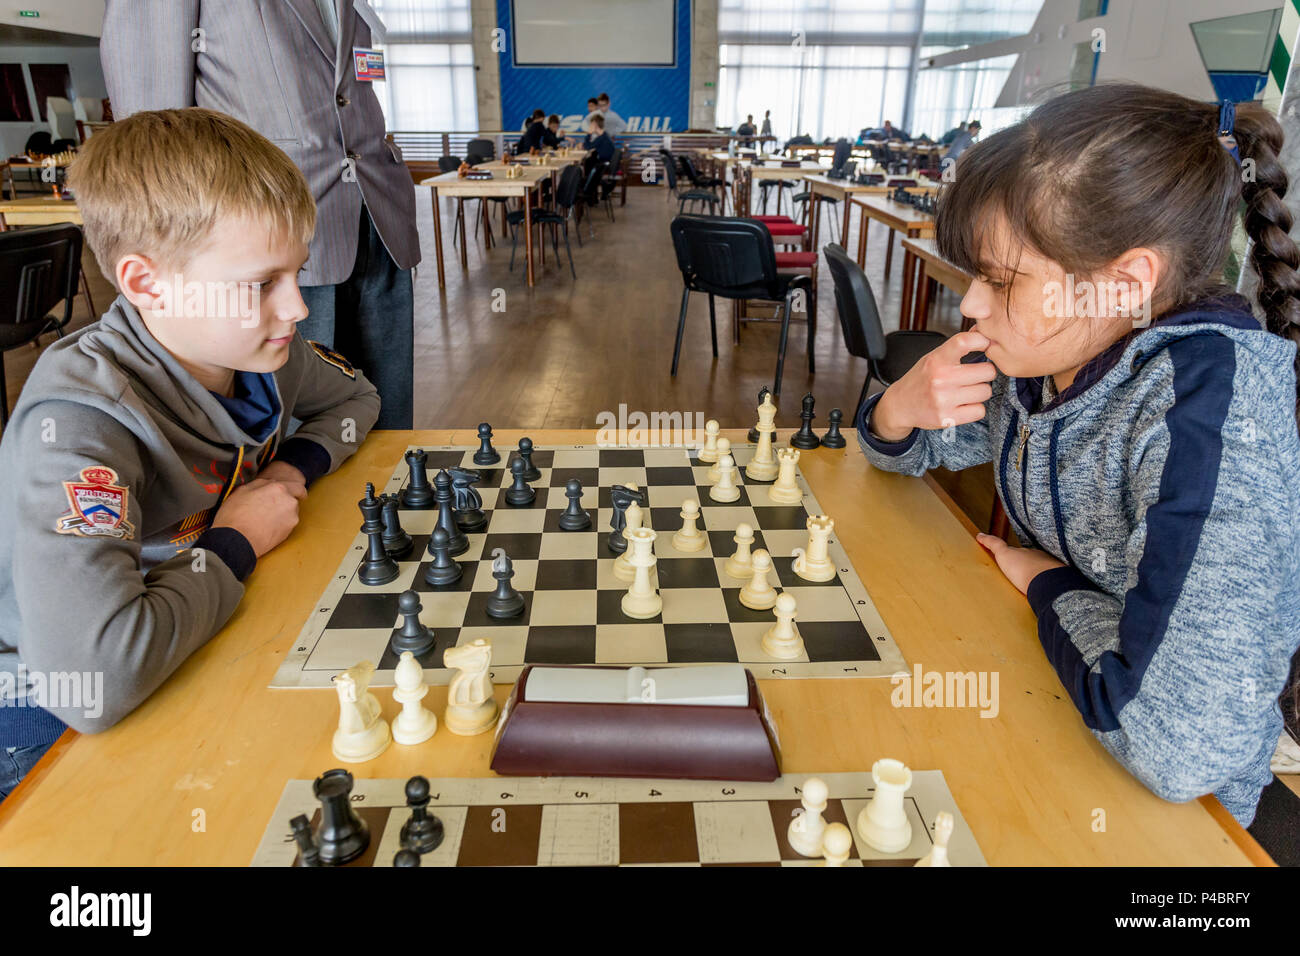 Rusia, Vladivostok, 02/24/2018. Los niños juegan al ajedrez durante la  competencia de ajedrez en el club de ajedrez. Educación, ajedrez y juegos  mentales. La competencia y el torneo Fotografía de stock - Alamy